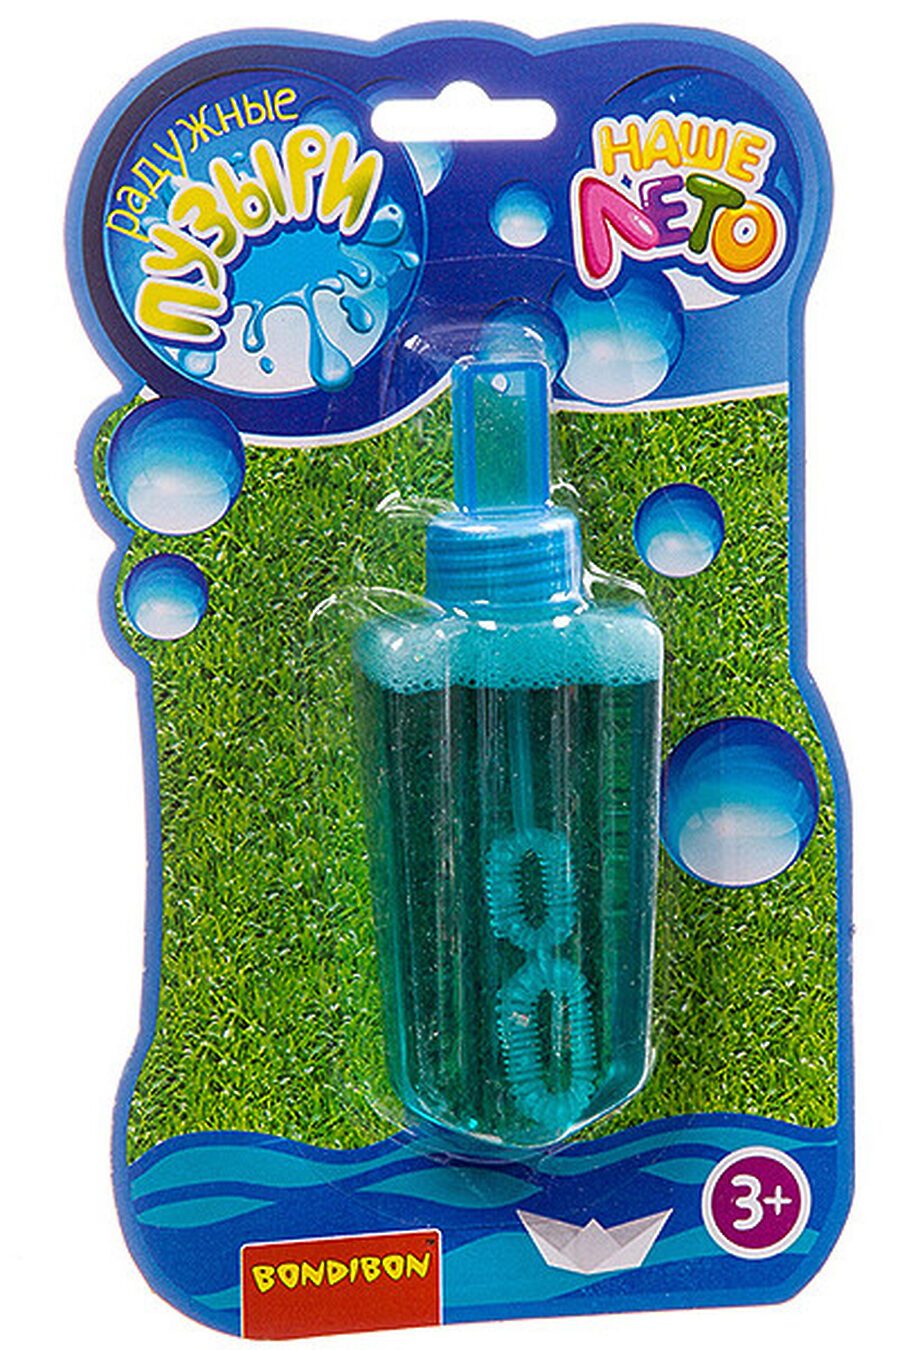 Мыльные пузыри для детей BONDIBON 718206 купить оптом от производителя. Совместная покупка игрушек в OptMoyo